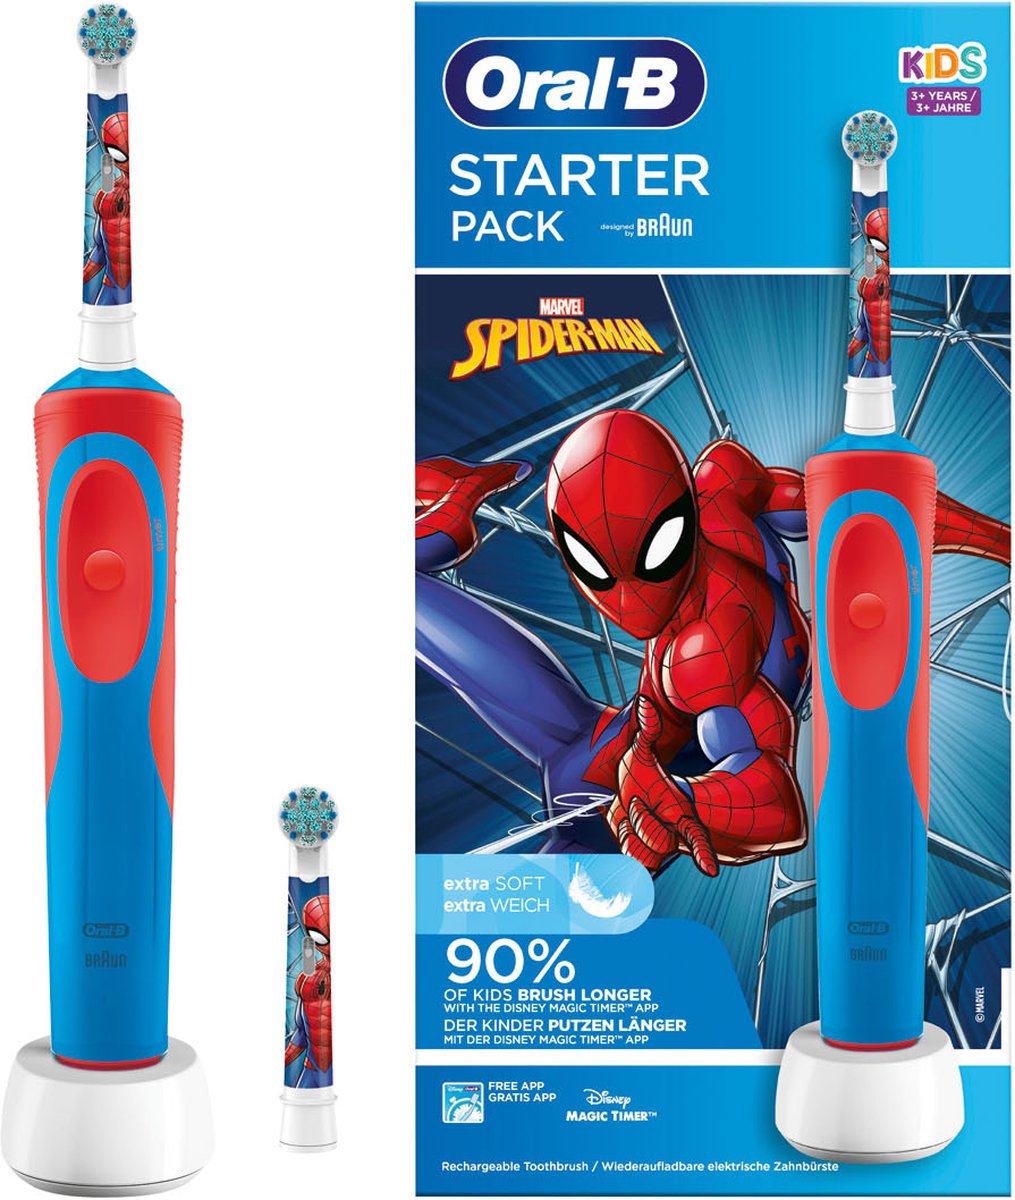 Oral B Oral-B Kids Spiderman Elektrische Tandenborstel Met 2 opzetborstels Starter Pack Voor kinderen vanaf 3 jaar